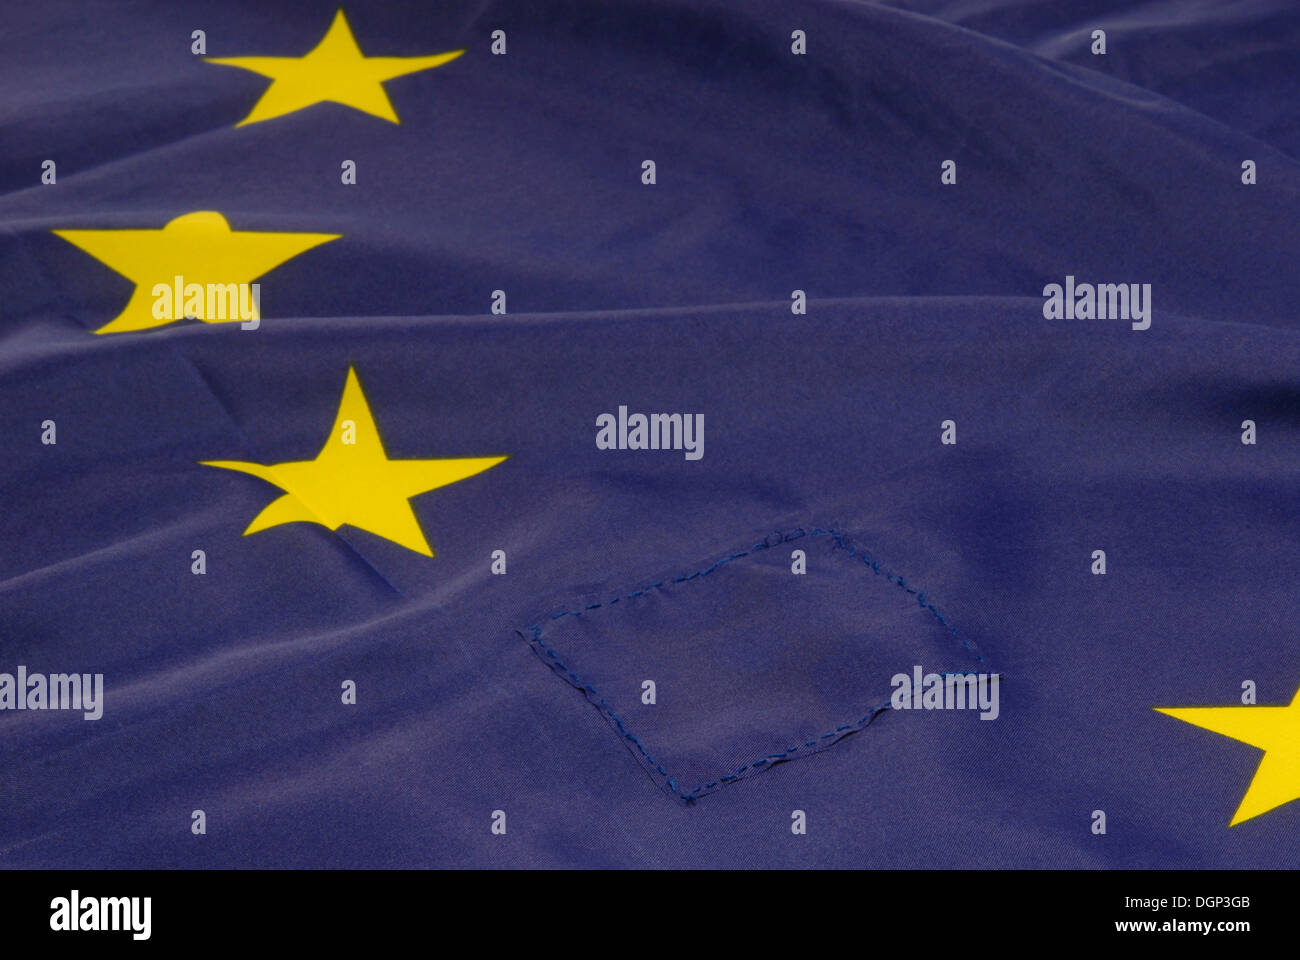 Pavillon de l'Europe avec un patch, une étoile est cousue dessus, image symbolique de la Grèce de quitter la Communauté européenne Banque D'Images